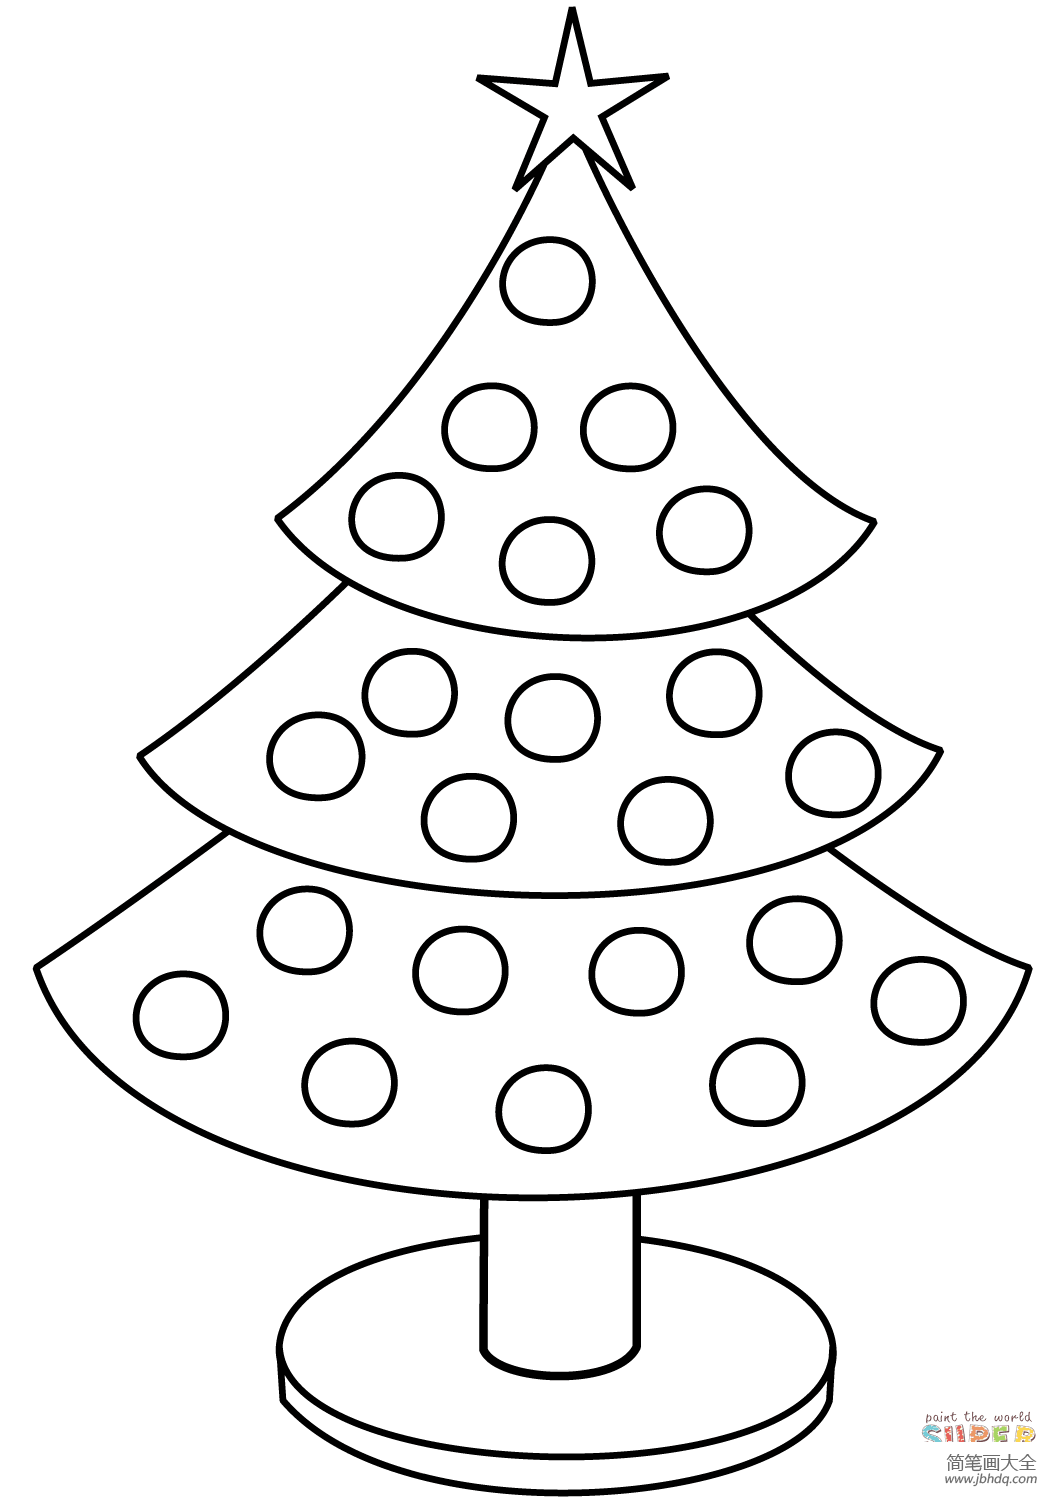 小朋友画的圣诞树